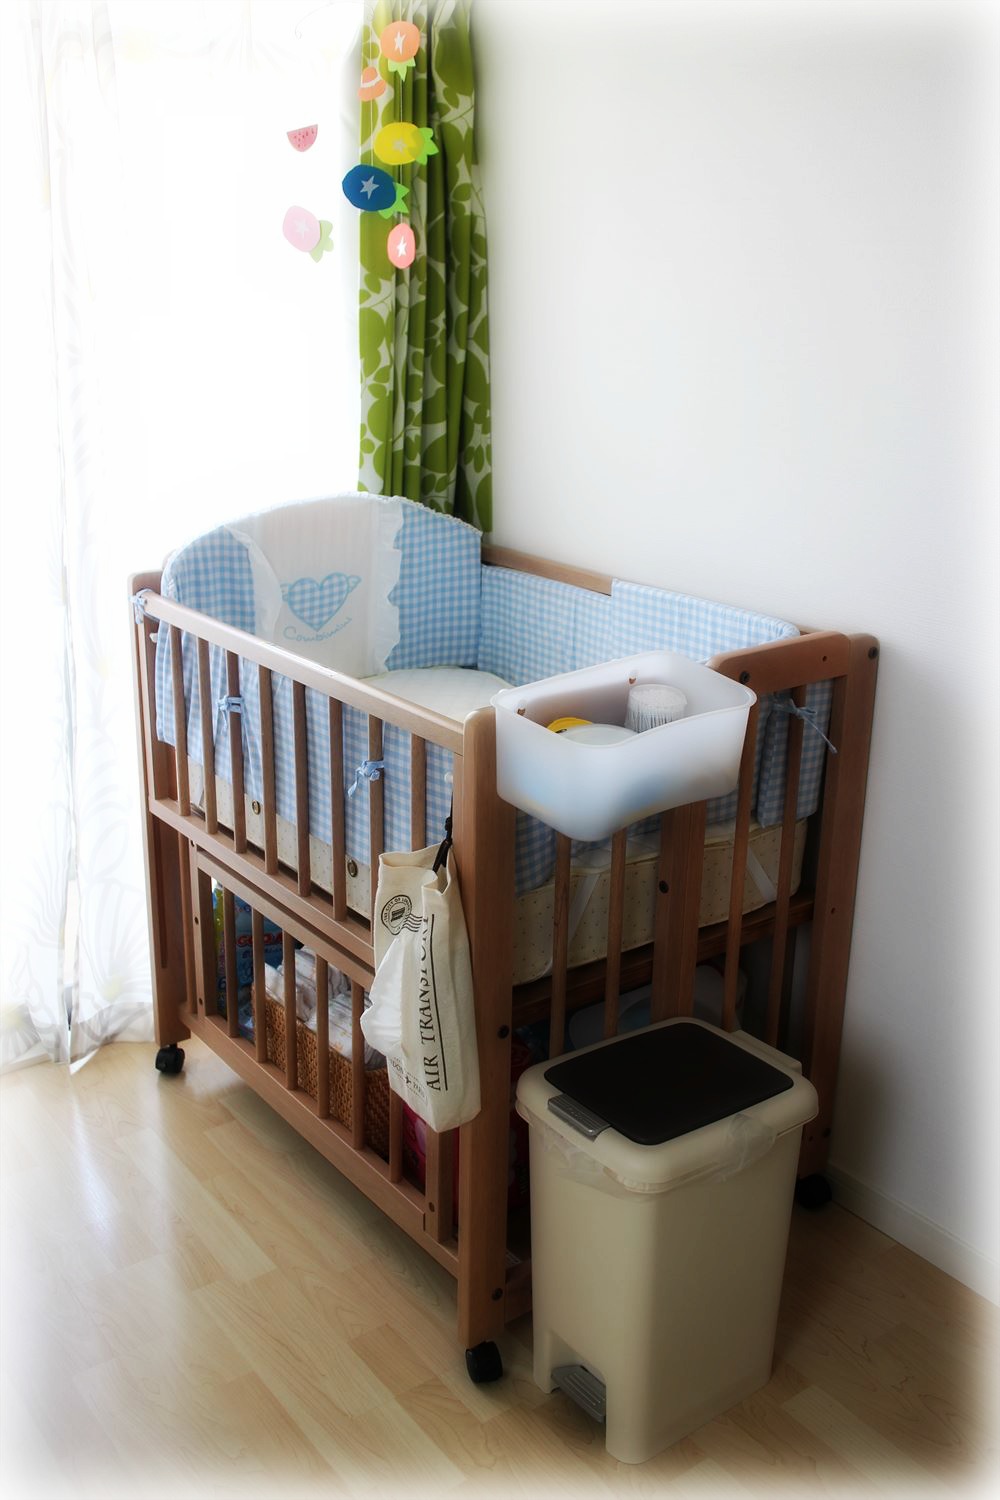 セールオファー ベビー☺️ベビーベッド☺️赤ちゃんの寝具❤ベット❤使いやすい✨収納便利❤ 布団/毛布